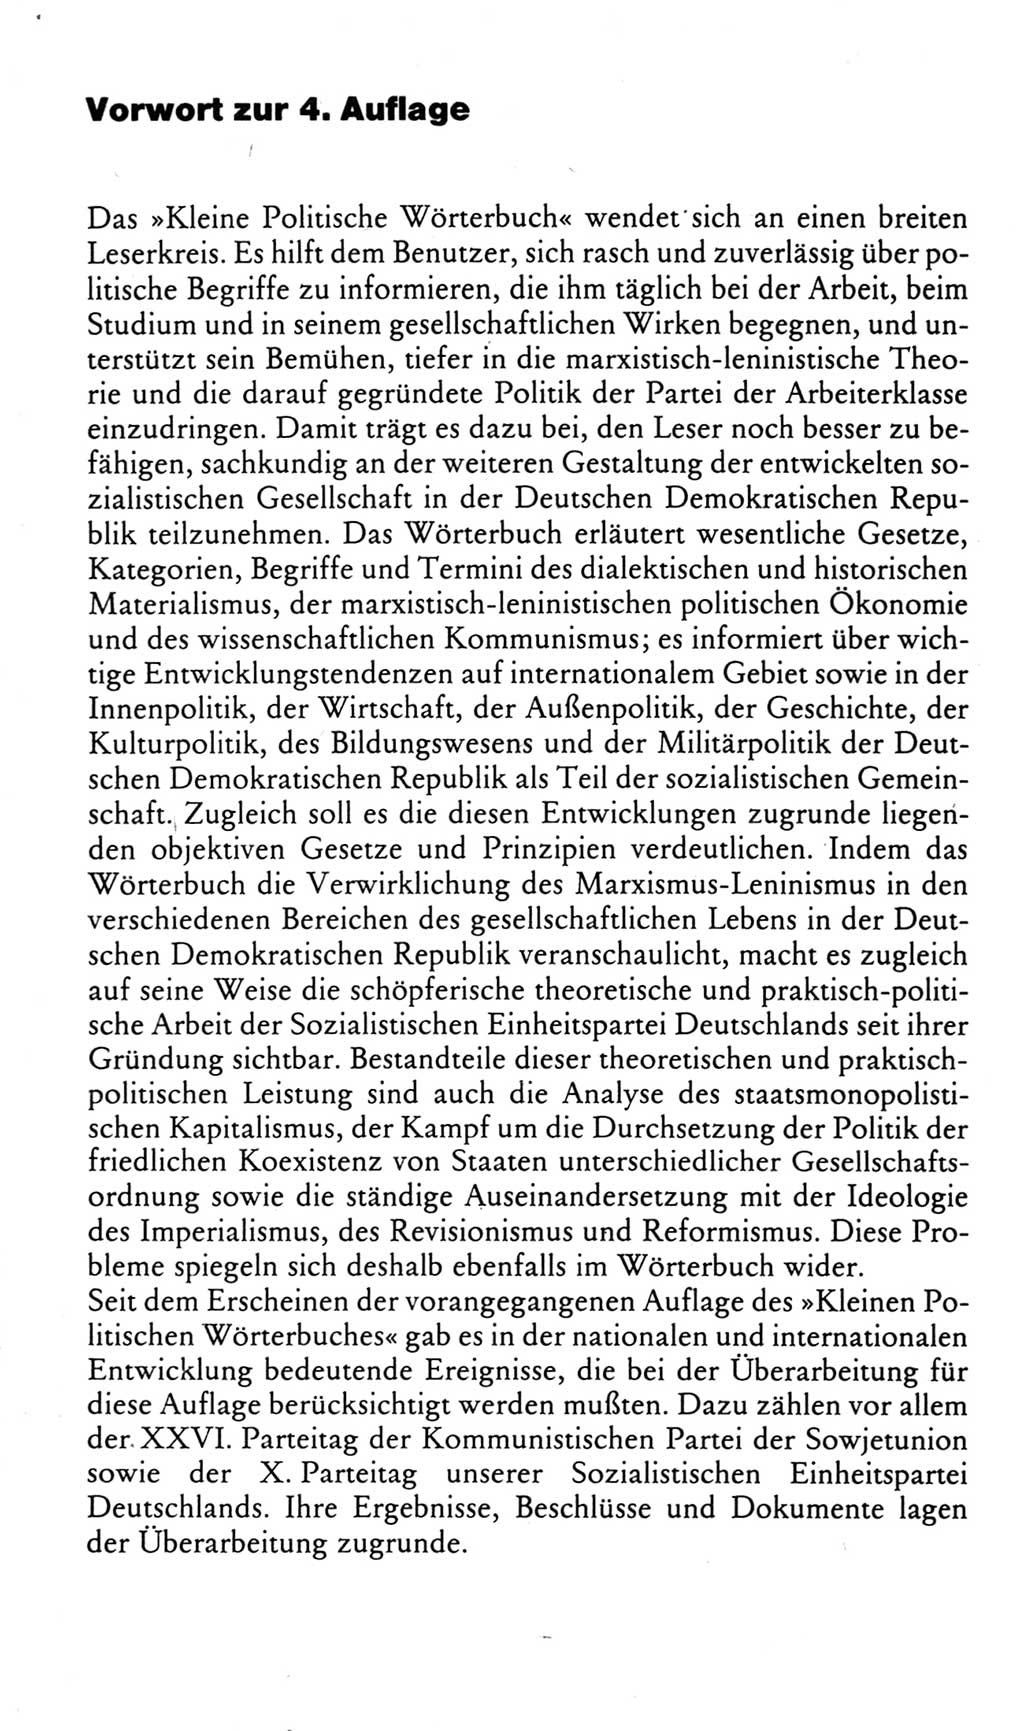 Kleines politisches Wörterbuch [Deutsche Demokratische Republik (DDR)] 1983, Seite 7 (Kl. pol. Wb. DDR 1983, S. 7)